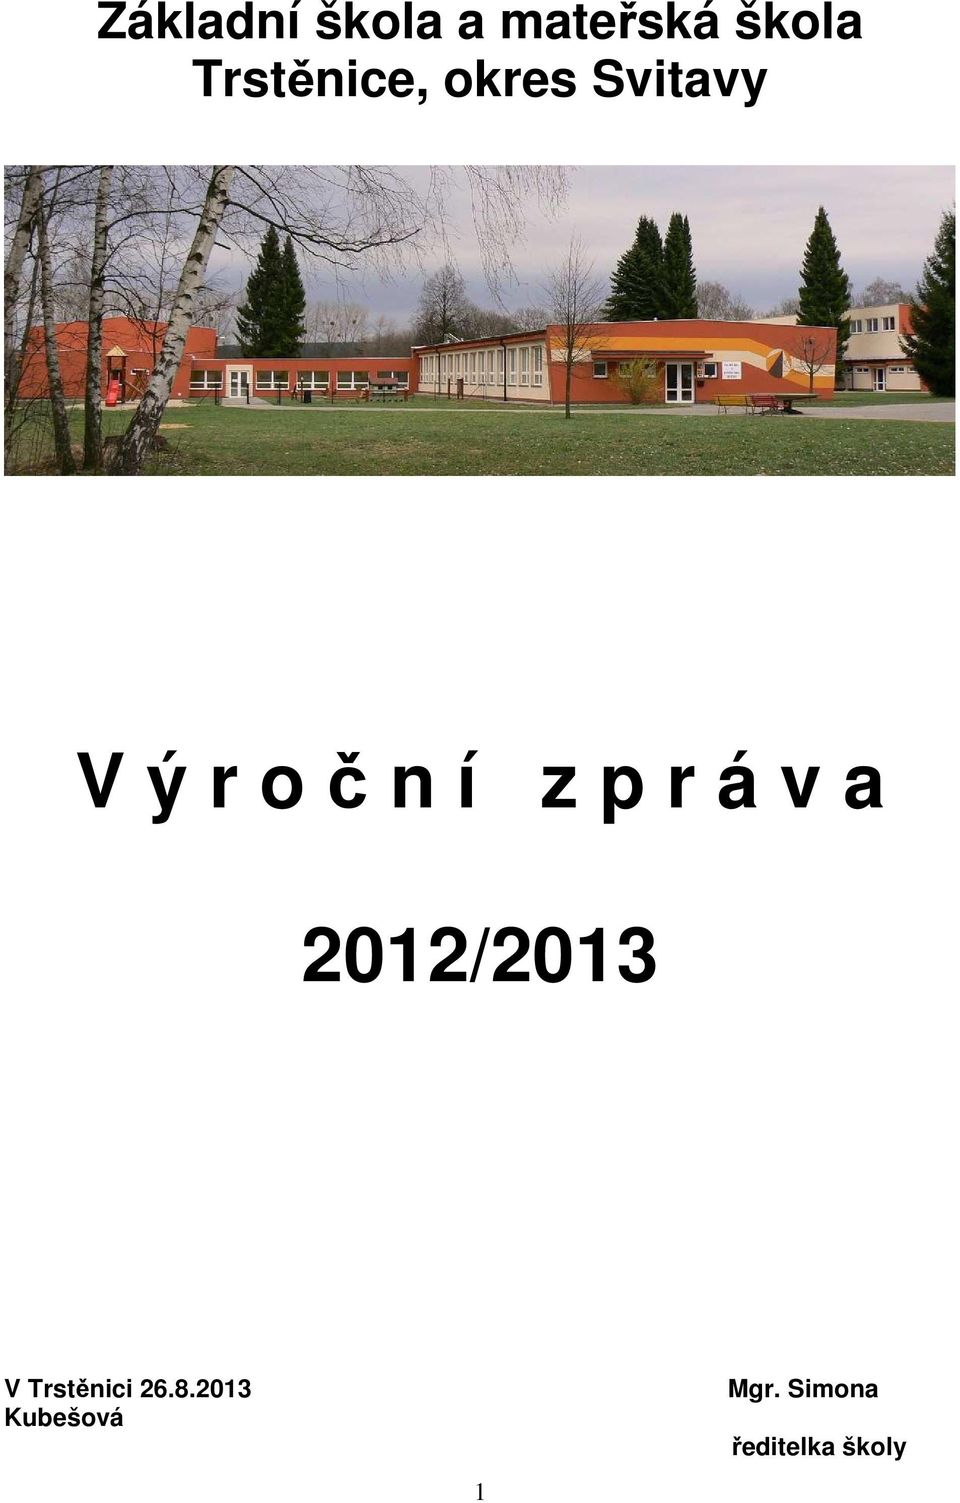 z p r á v a 2012/2013 V Trstěnici 26.8.